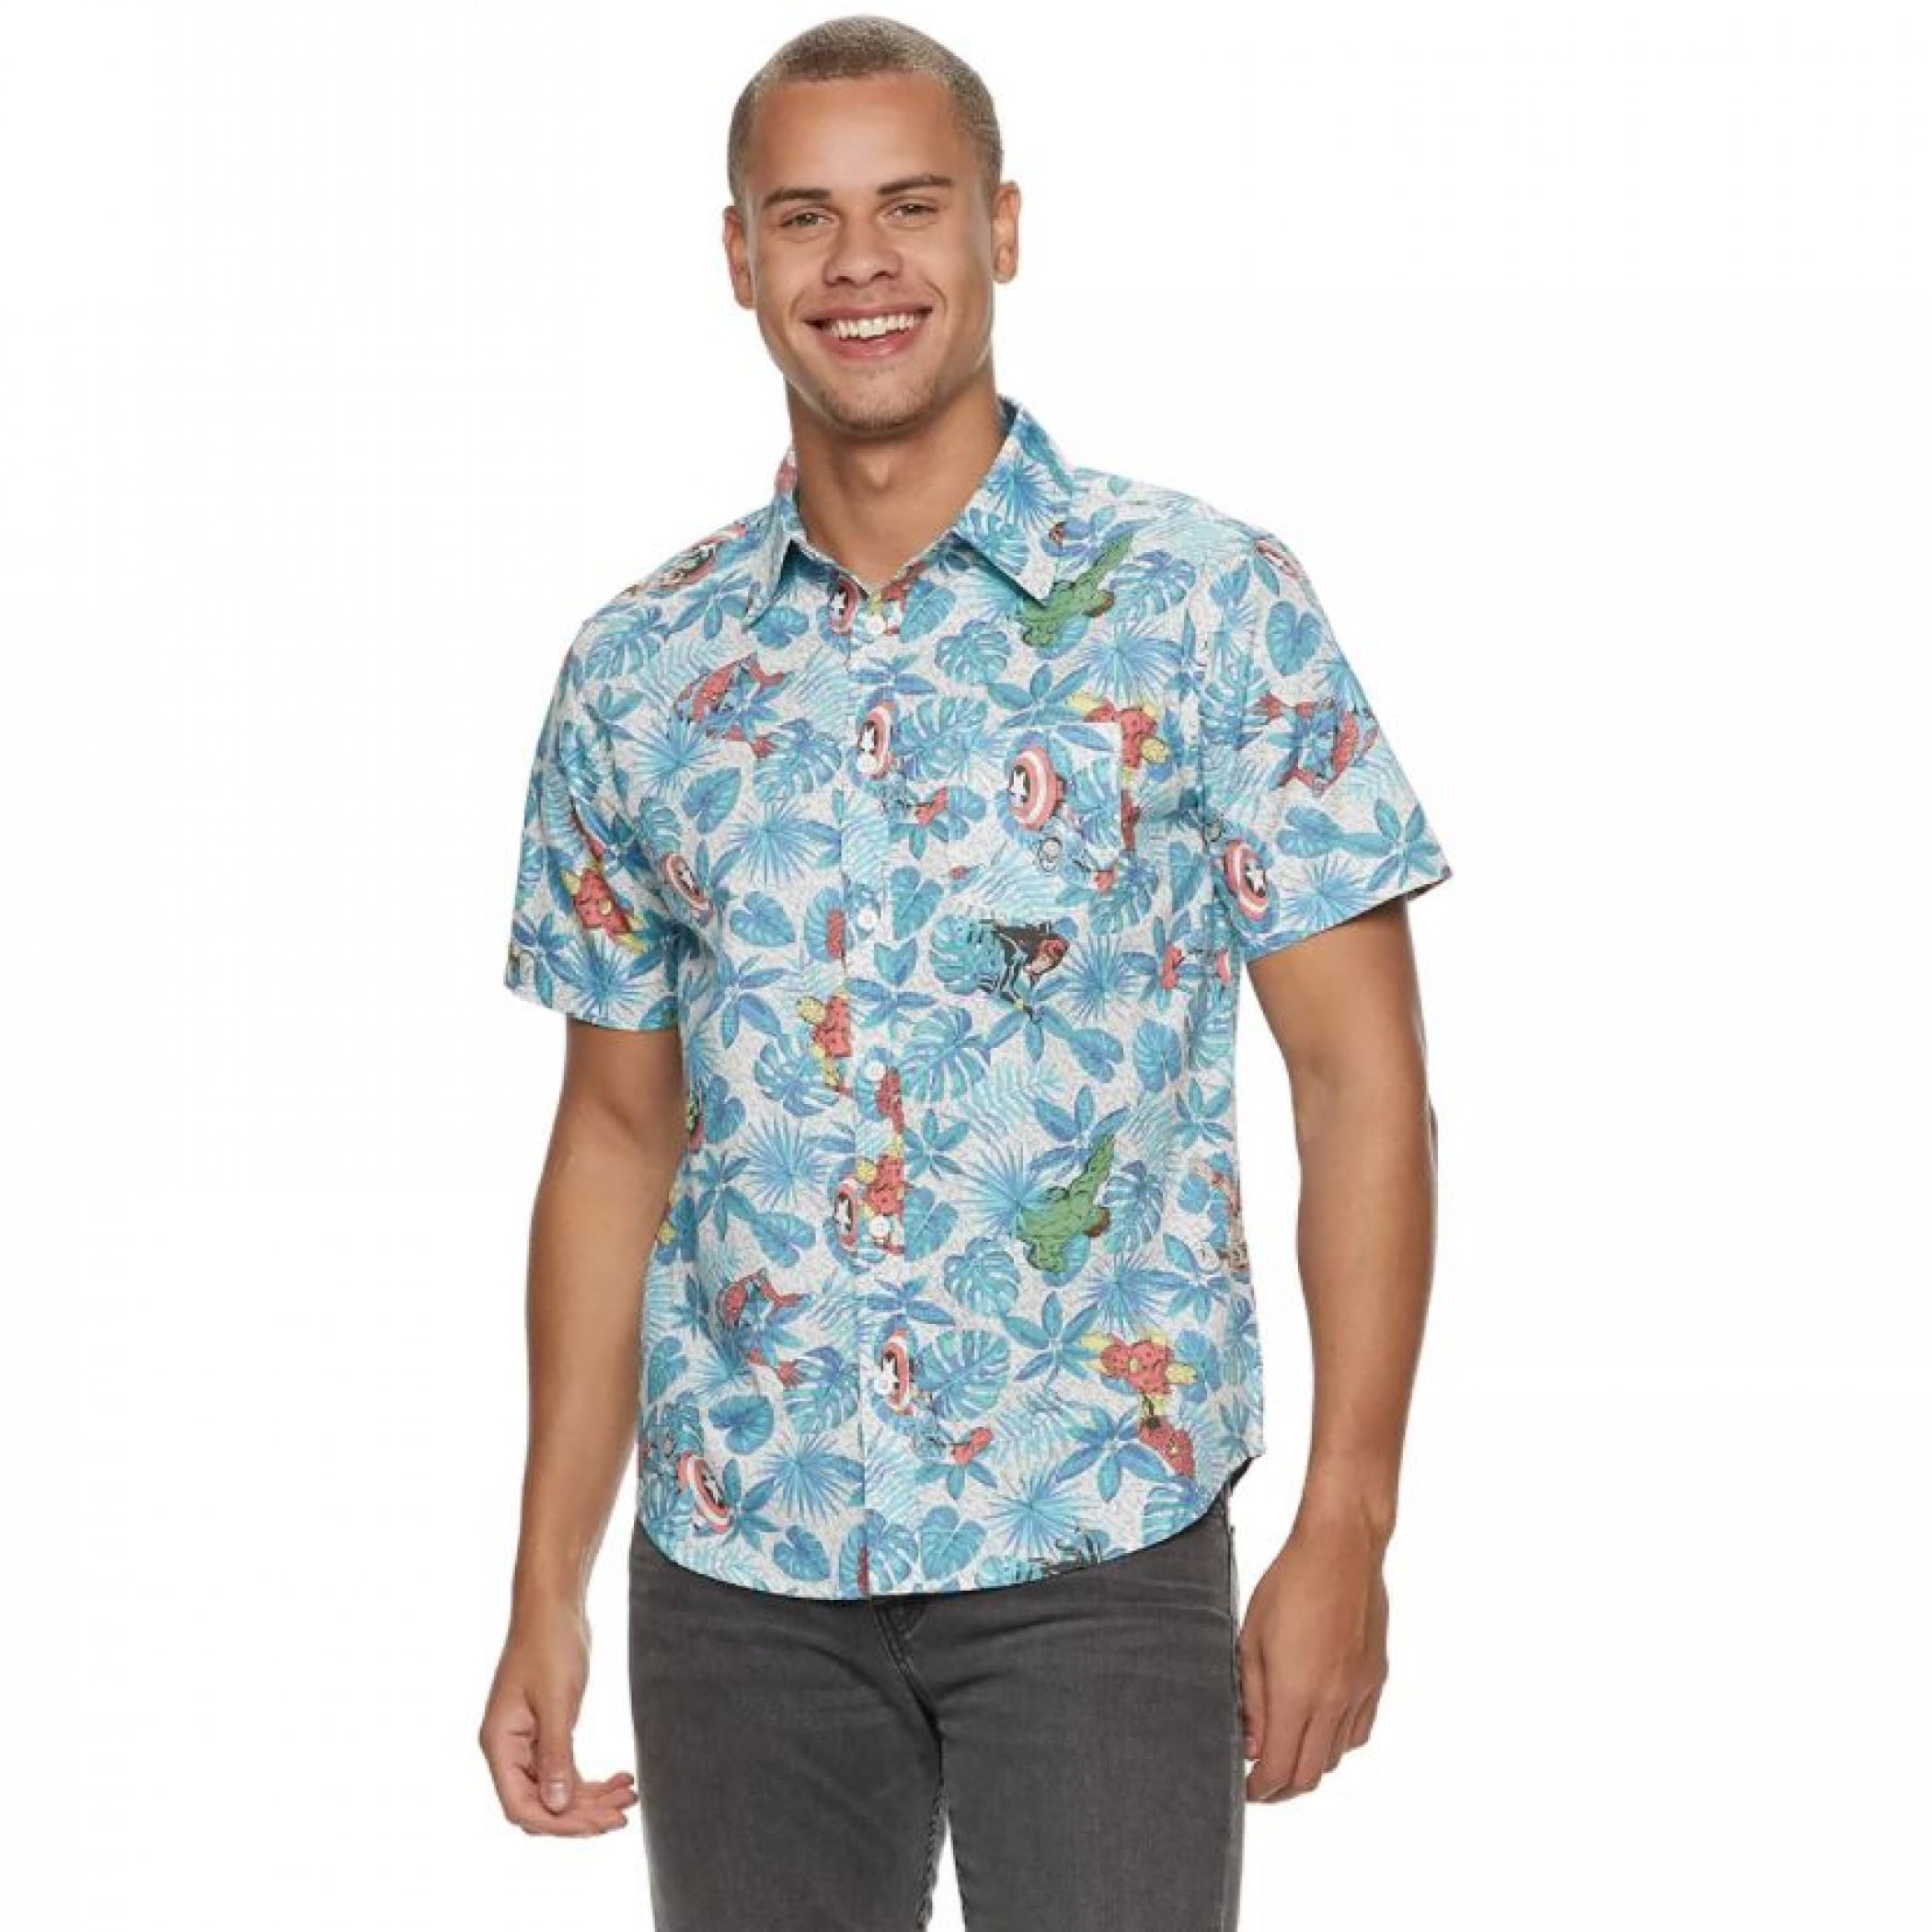 Marvel Avengers Button Up Hawaiian Shirt-XLarge - Walmart.com